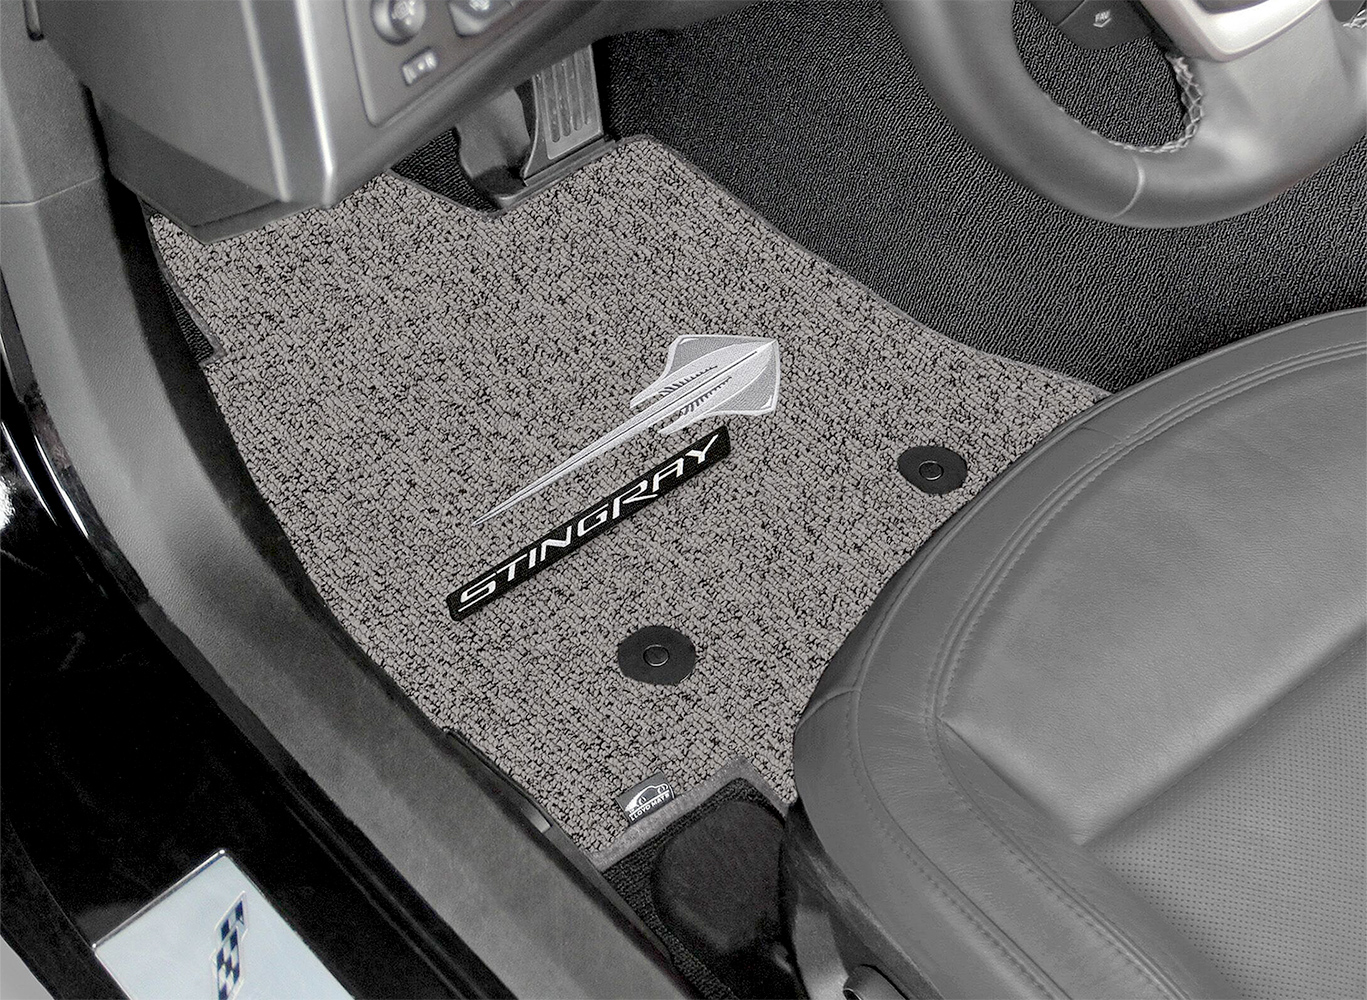 DashMat Original Dashboard Cover Saab 9-5 (Premium Carpet, Black) - 2